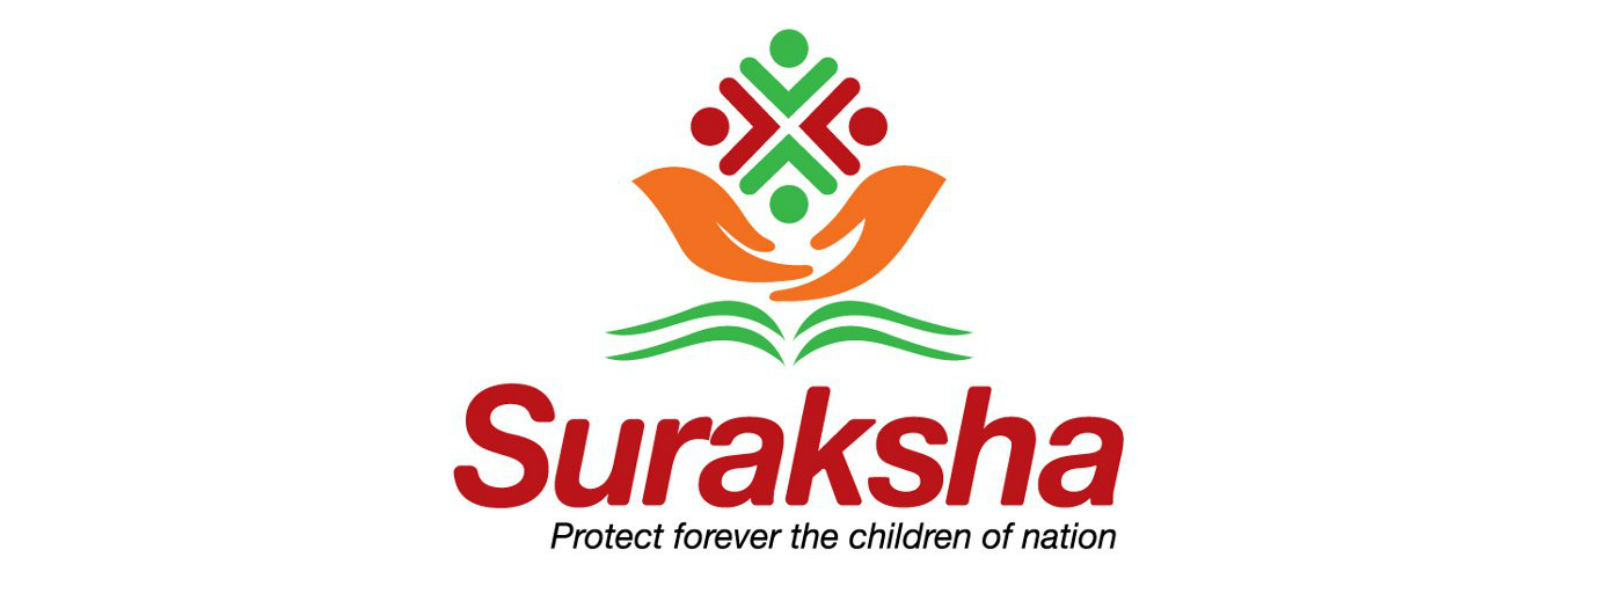 Suraksha: 2 officials of Education Min summoned